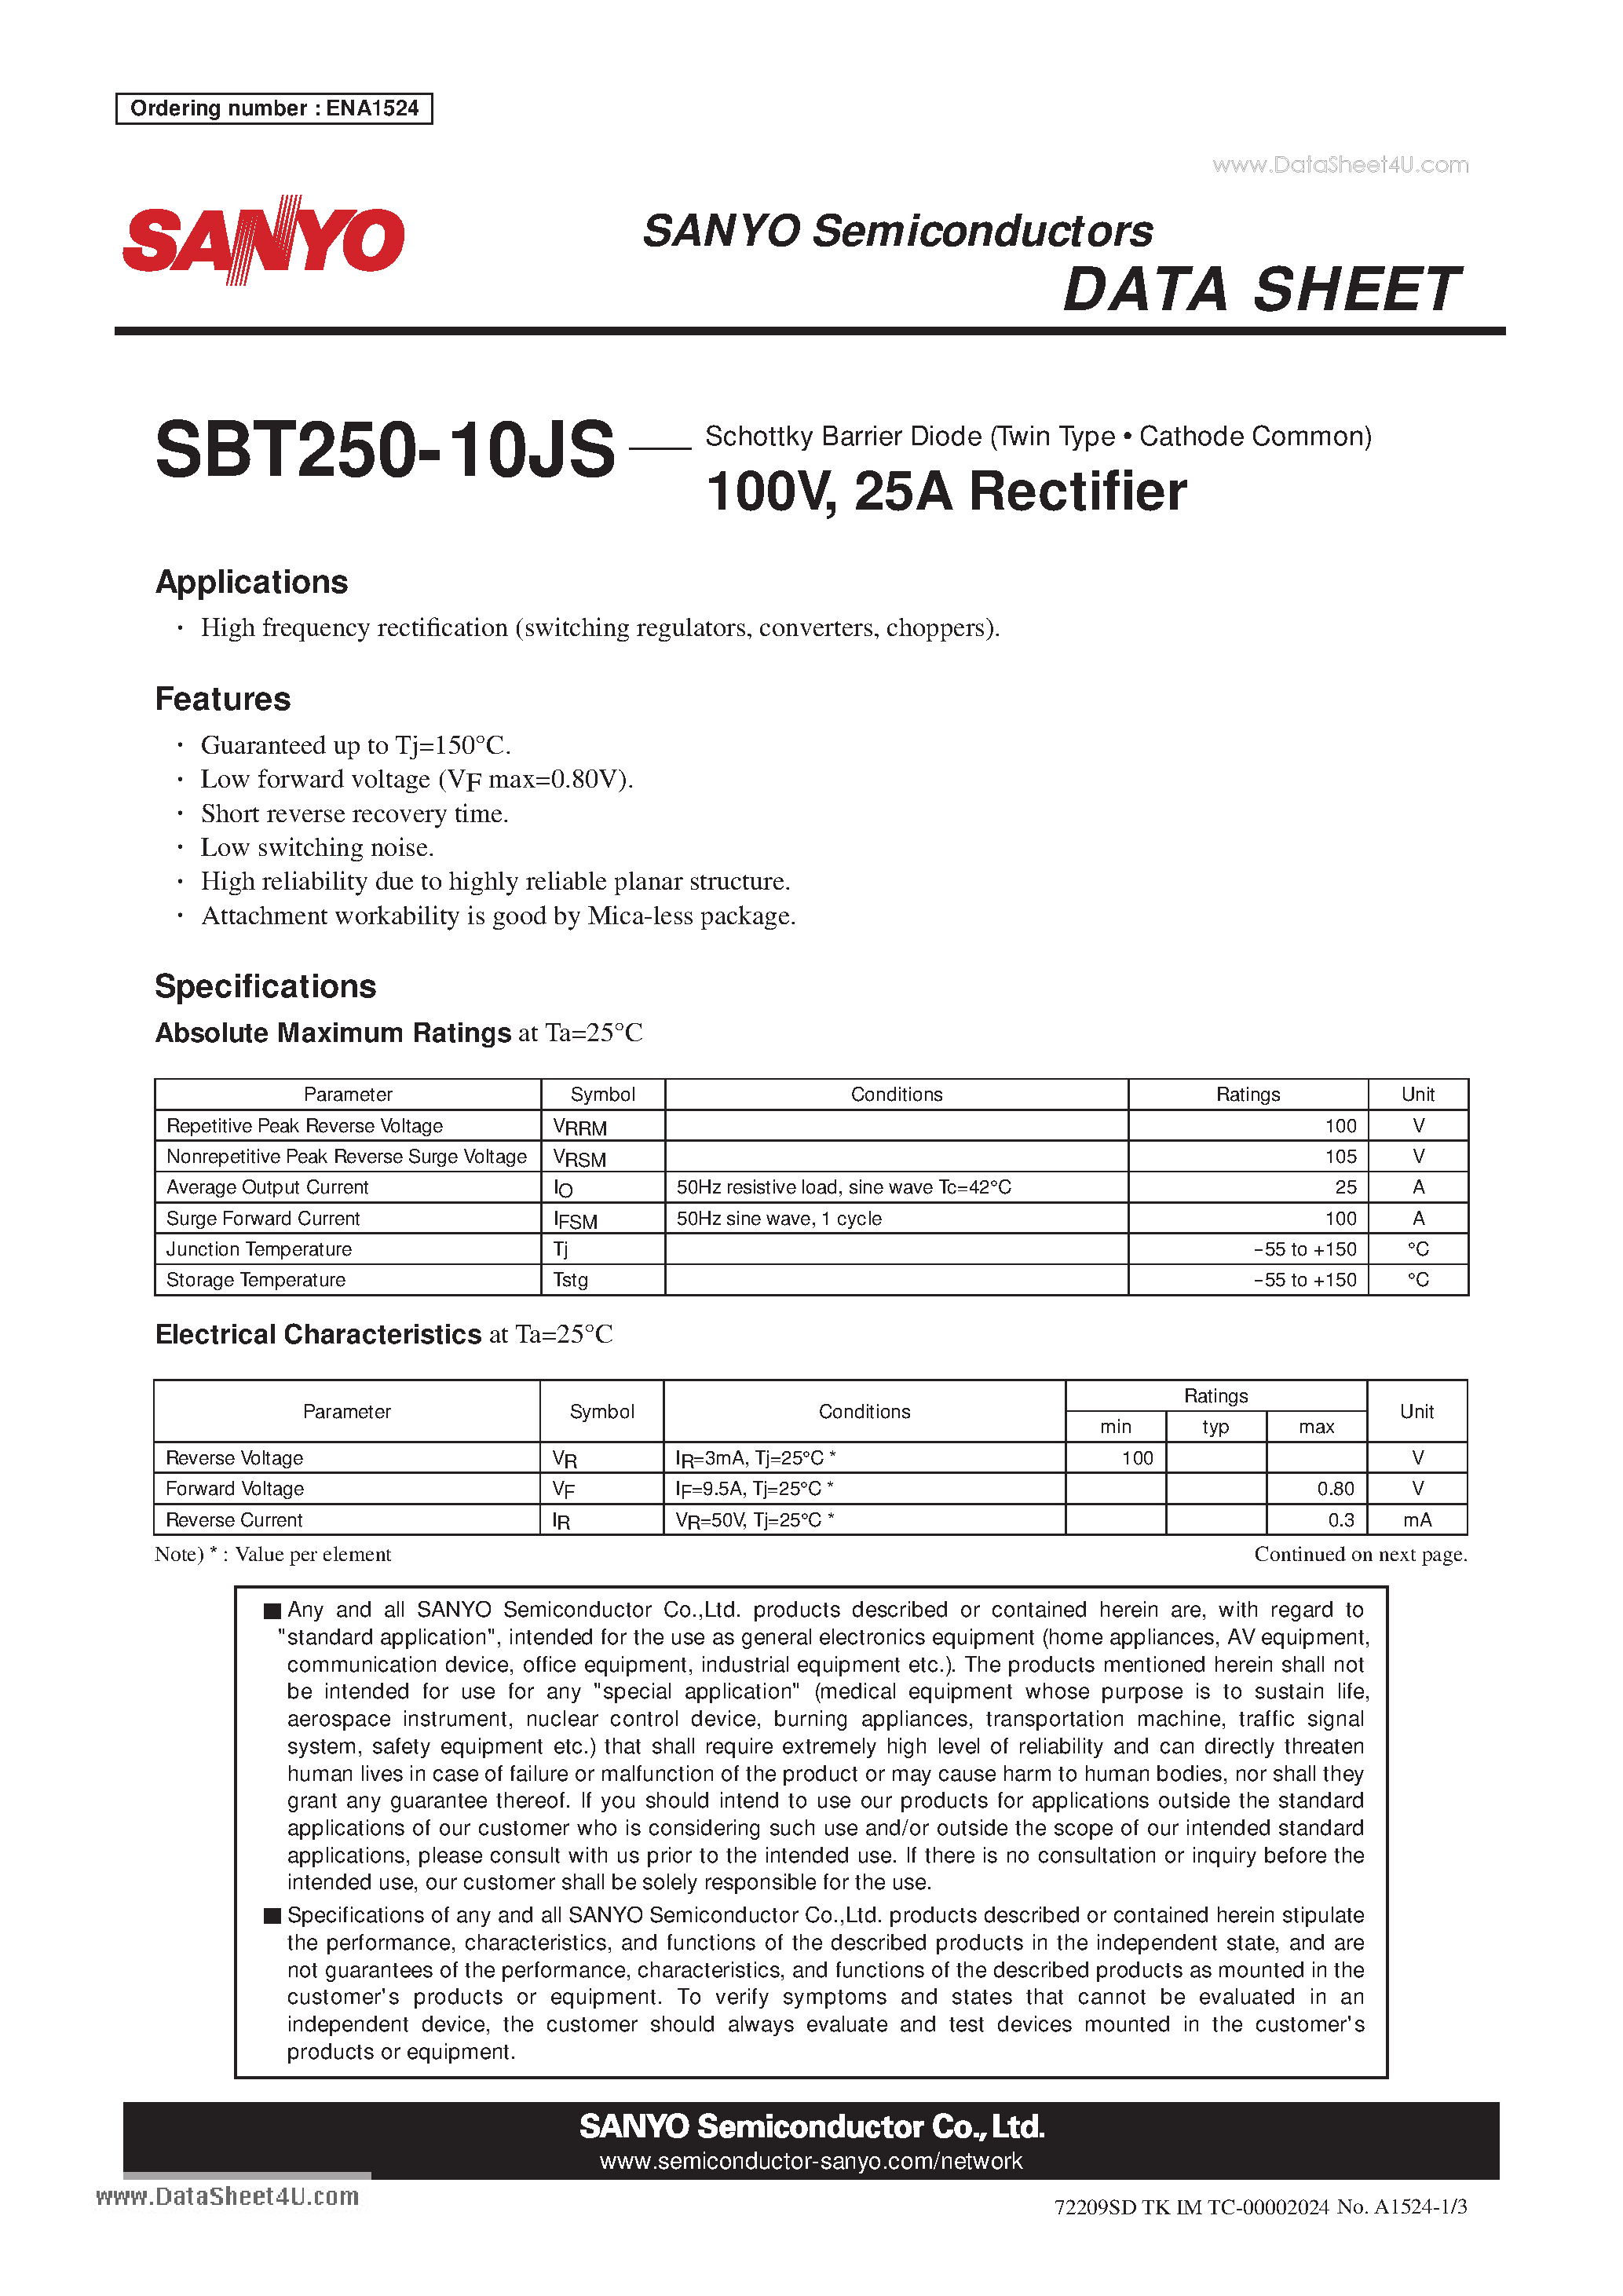 Datasheet SBT250-10JS - 100V 25A Rectifi er page 1